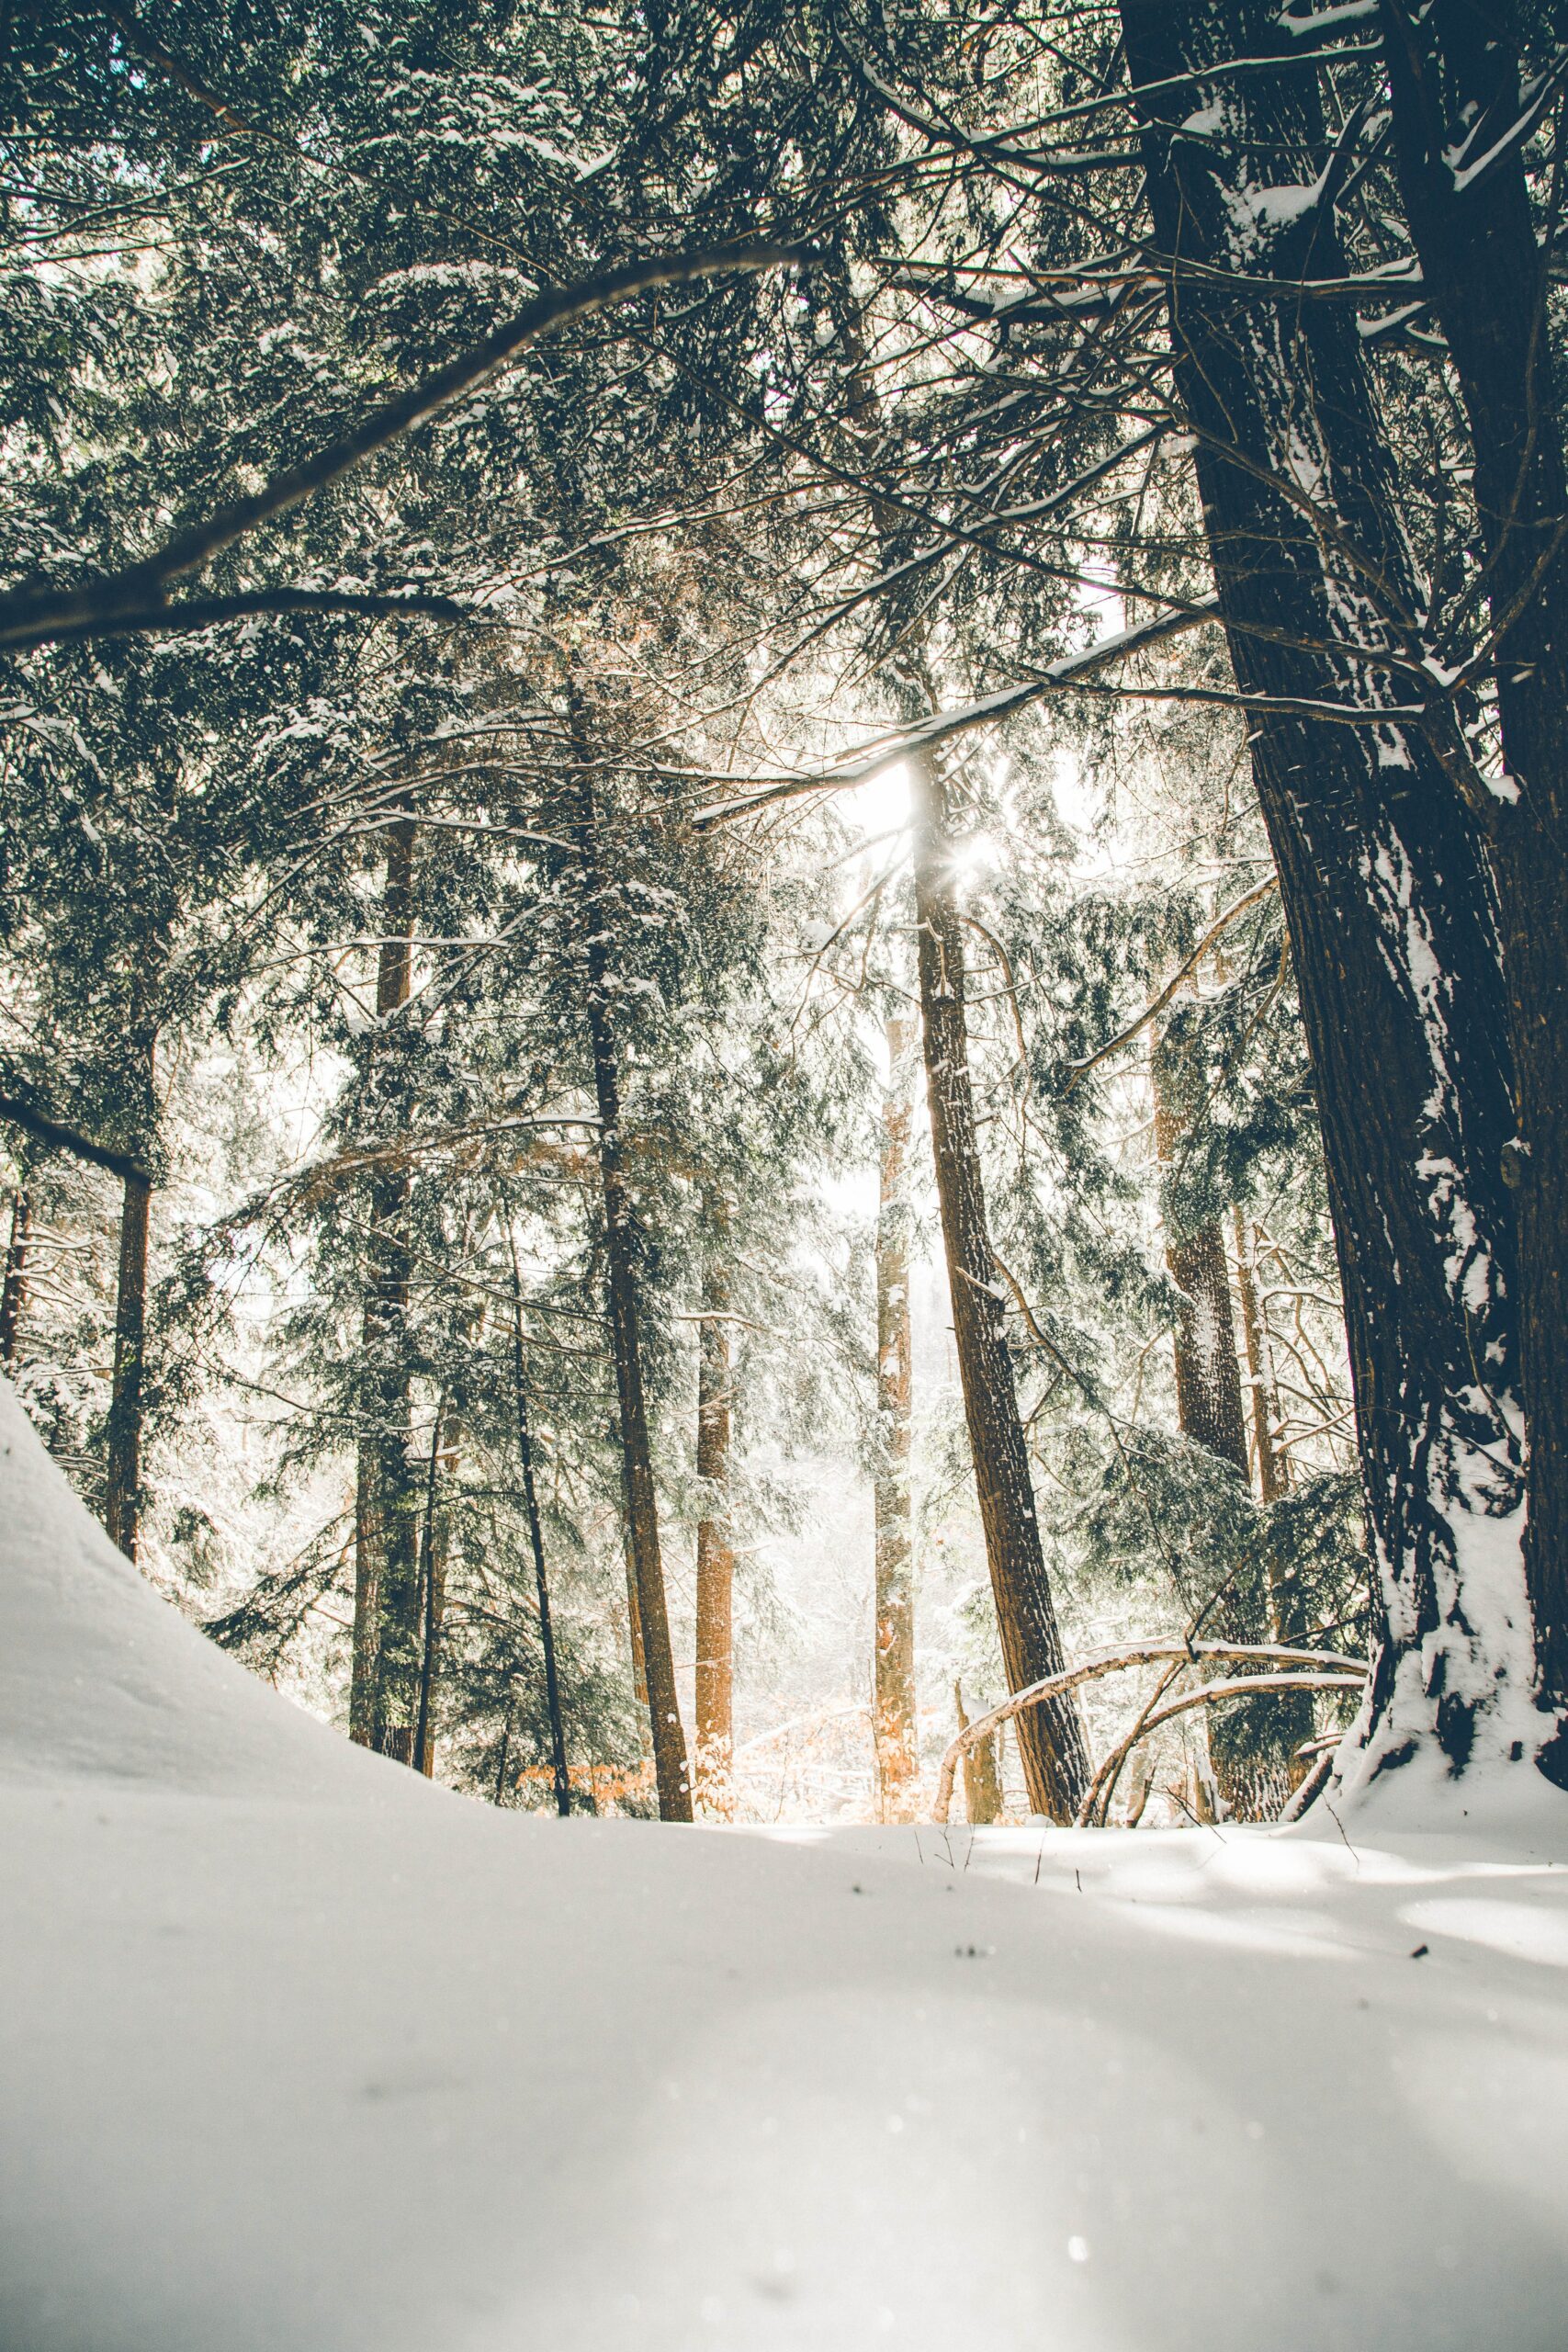 Winter in forest - Photo by Donnie Rosie on Unsplash